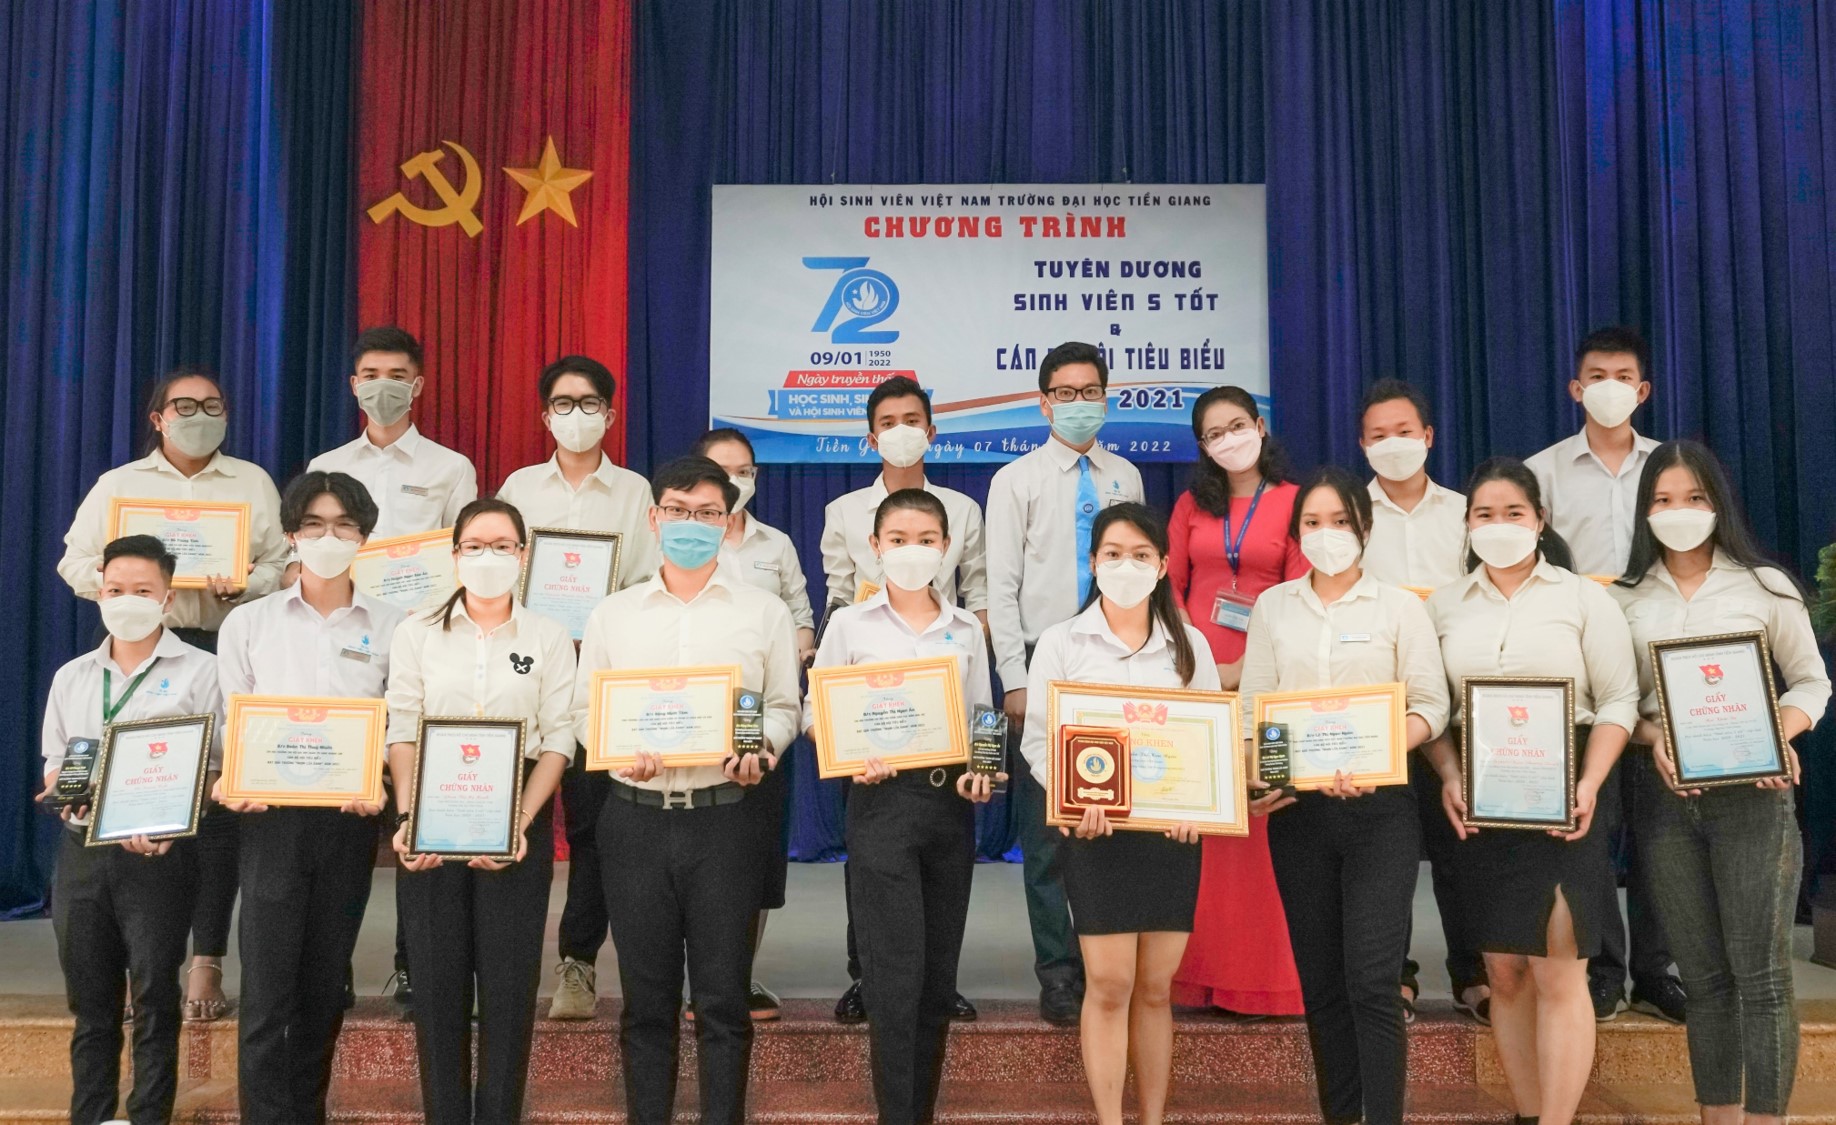 Lễ kỉ niệm 72 năm Ngày HSSV Việt Nam và Hội Sinh viên Việt Nam tuyên dương danh hiệu “Sinh viên 5 tốt” và cán bộ Hội tiêu biểu